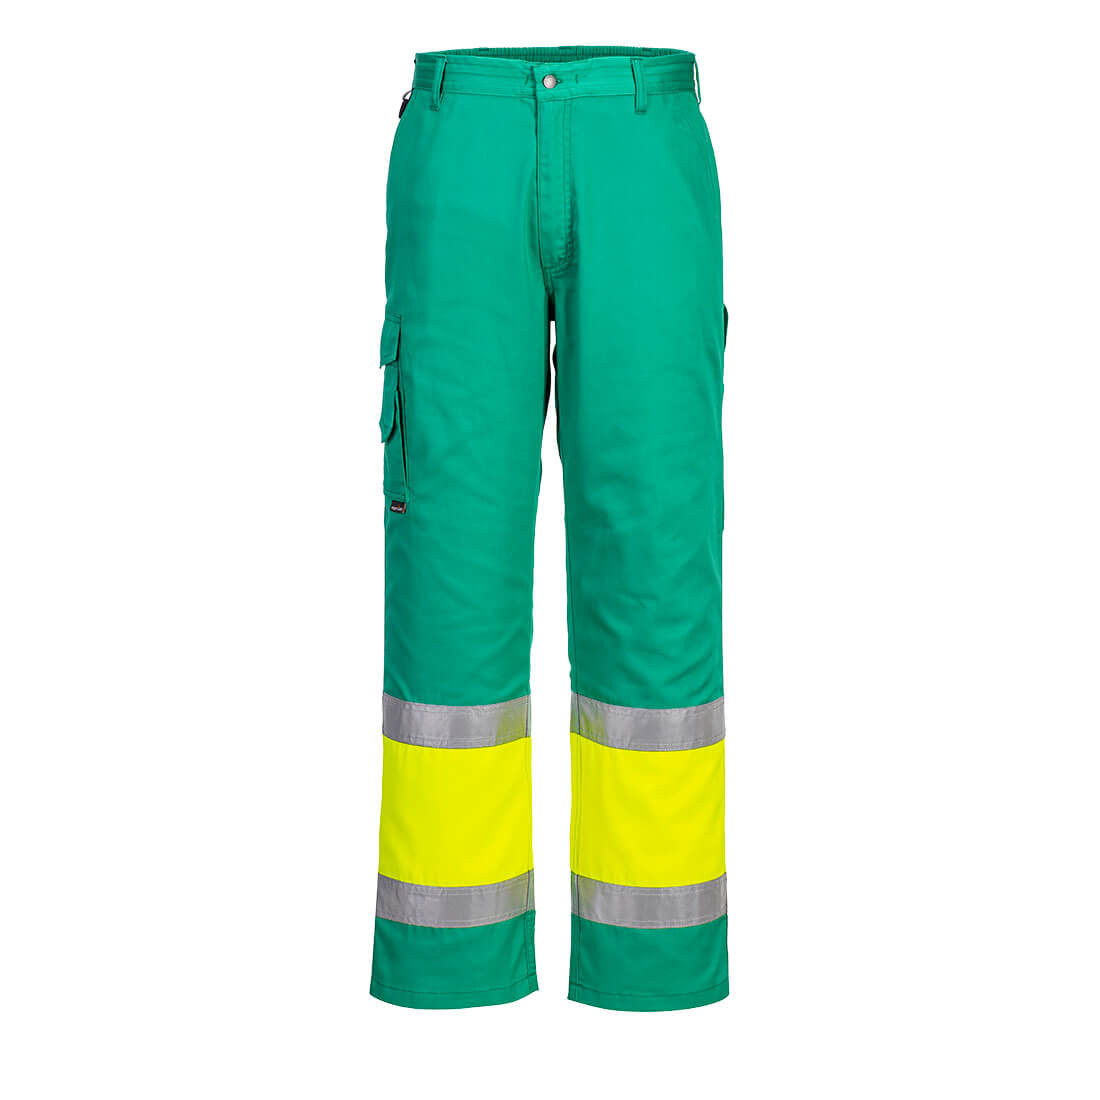 Pantaloni alta visibilità leggeri bicolore Combat - Abbigliamento di protezione